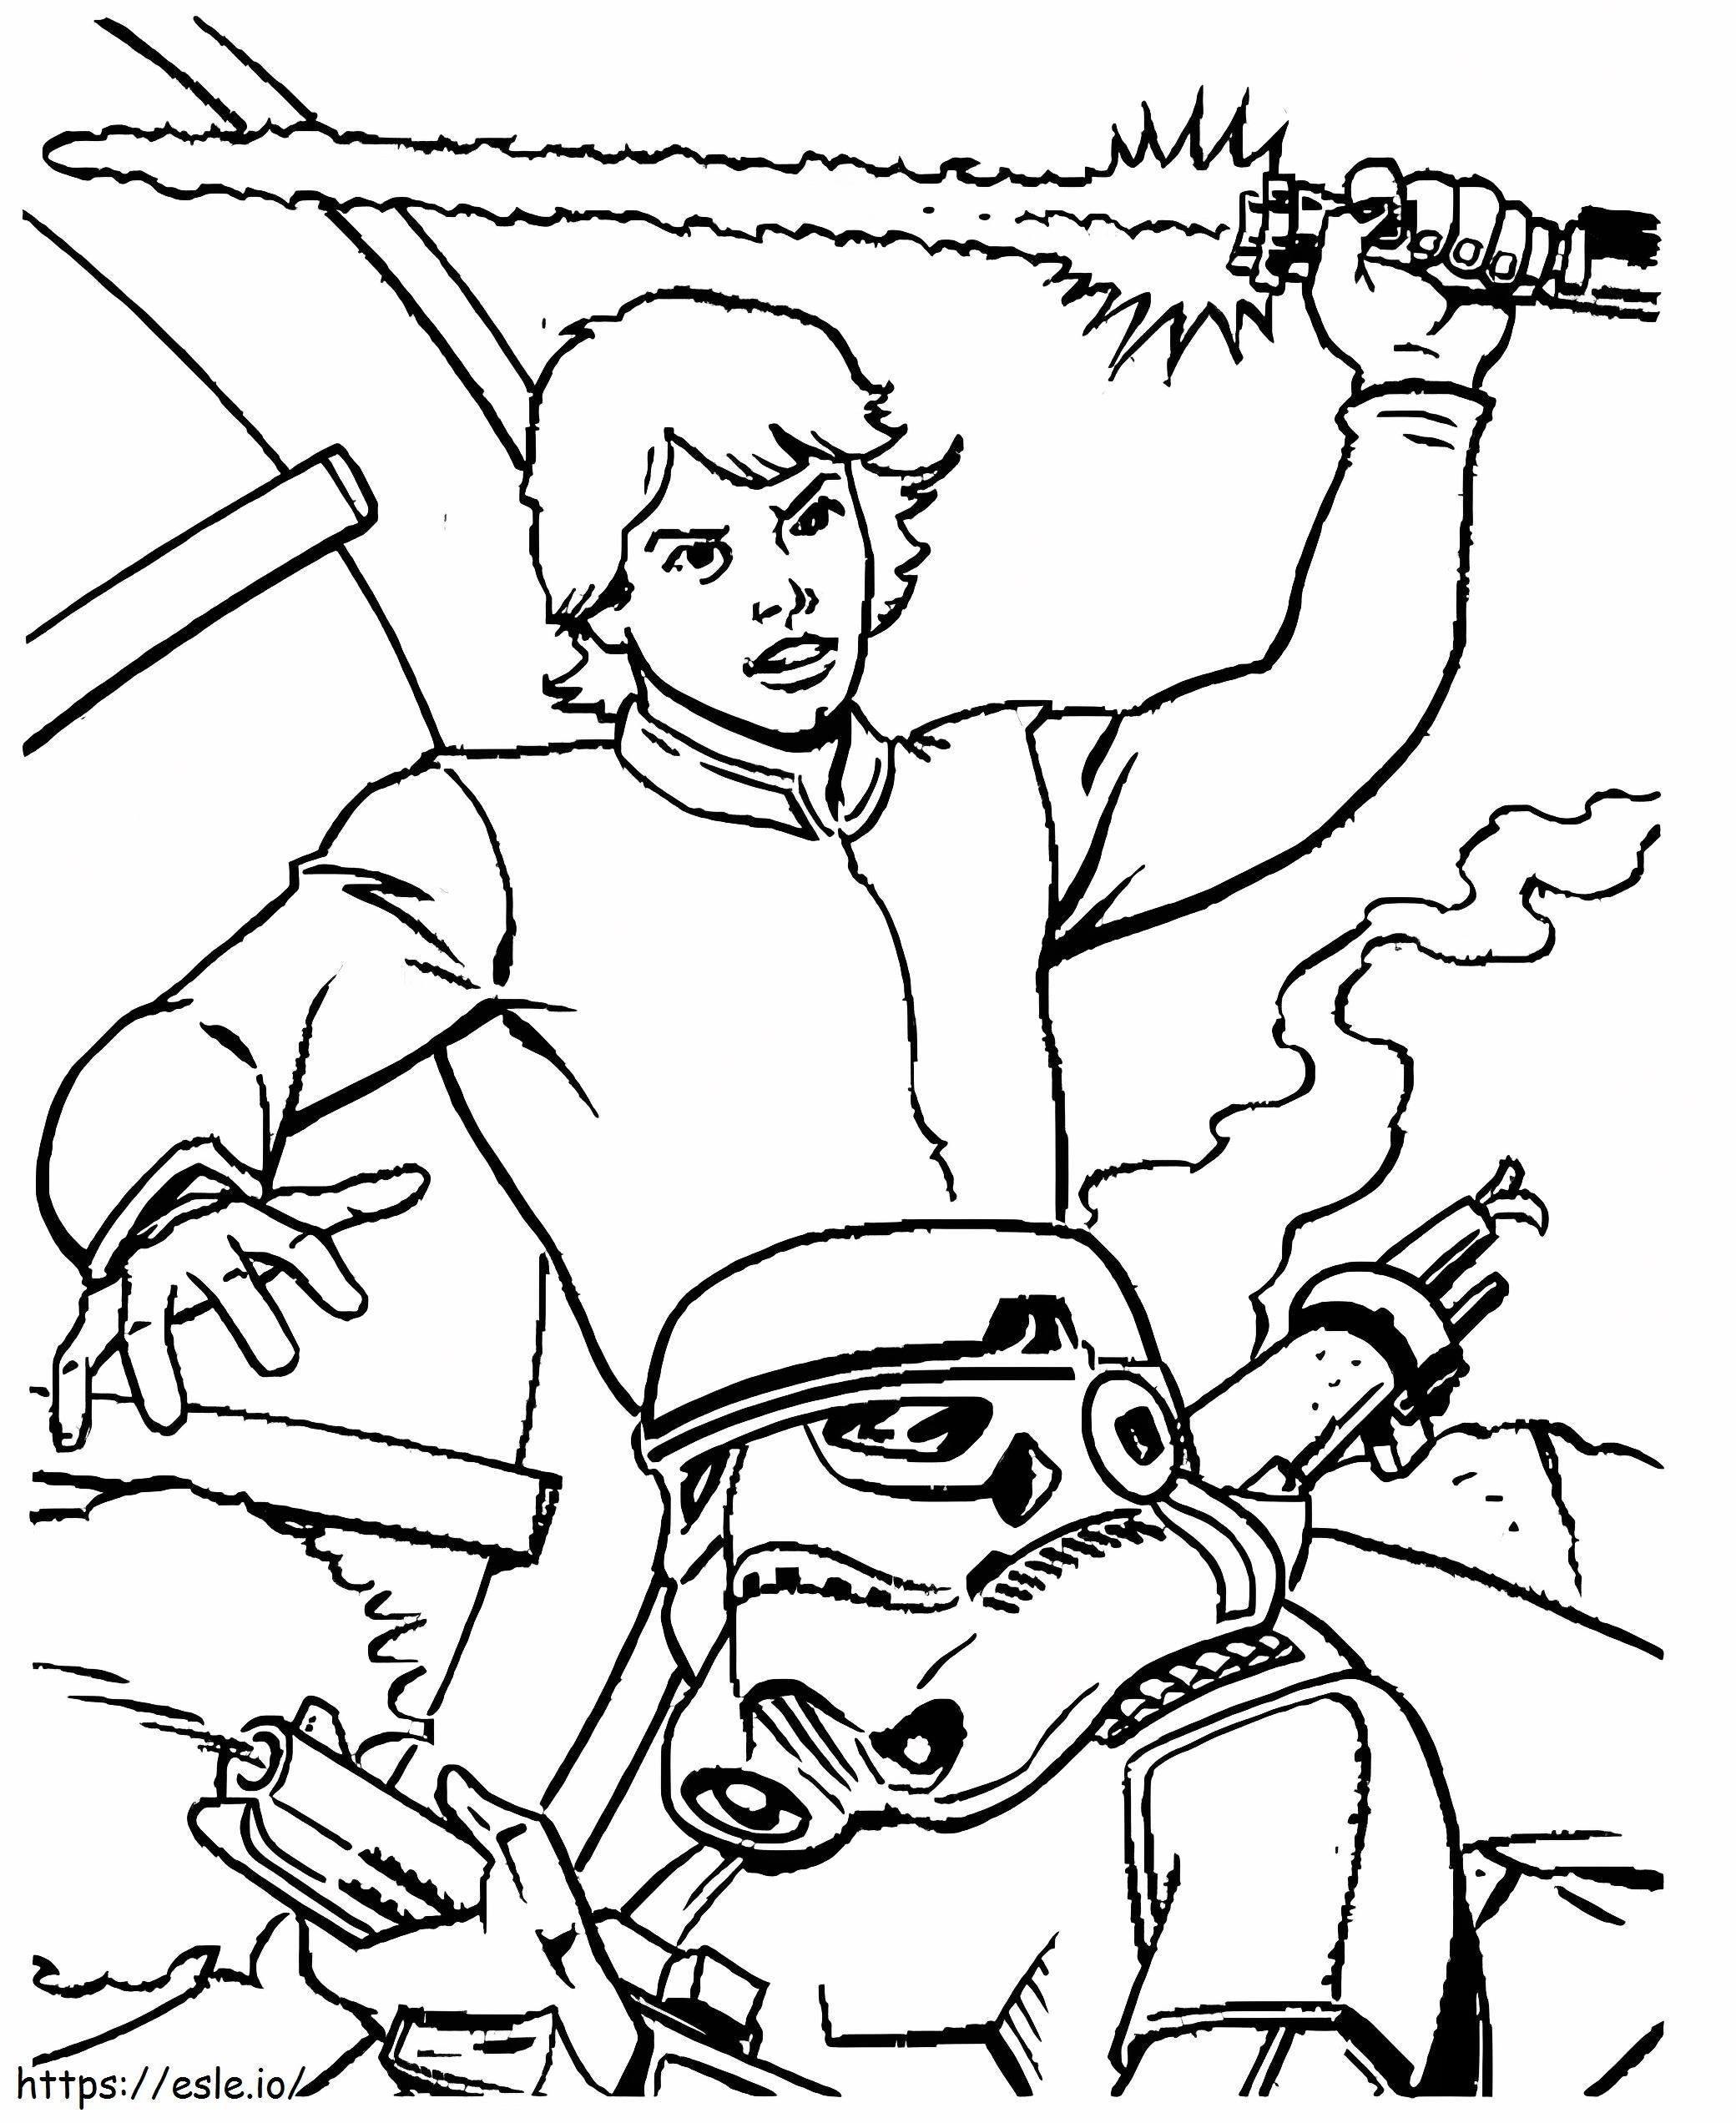 Coloriage Luke Skywalker se bat à imprimer dessin